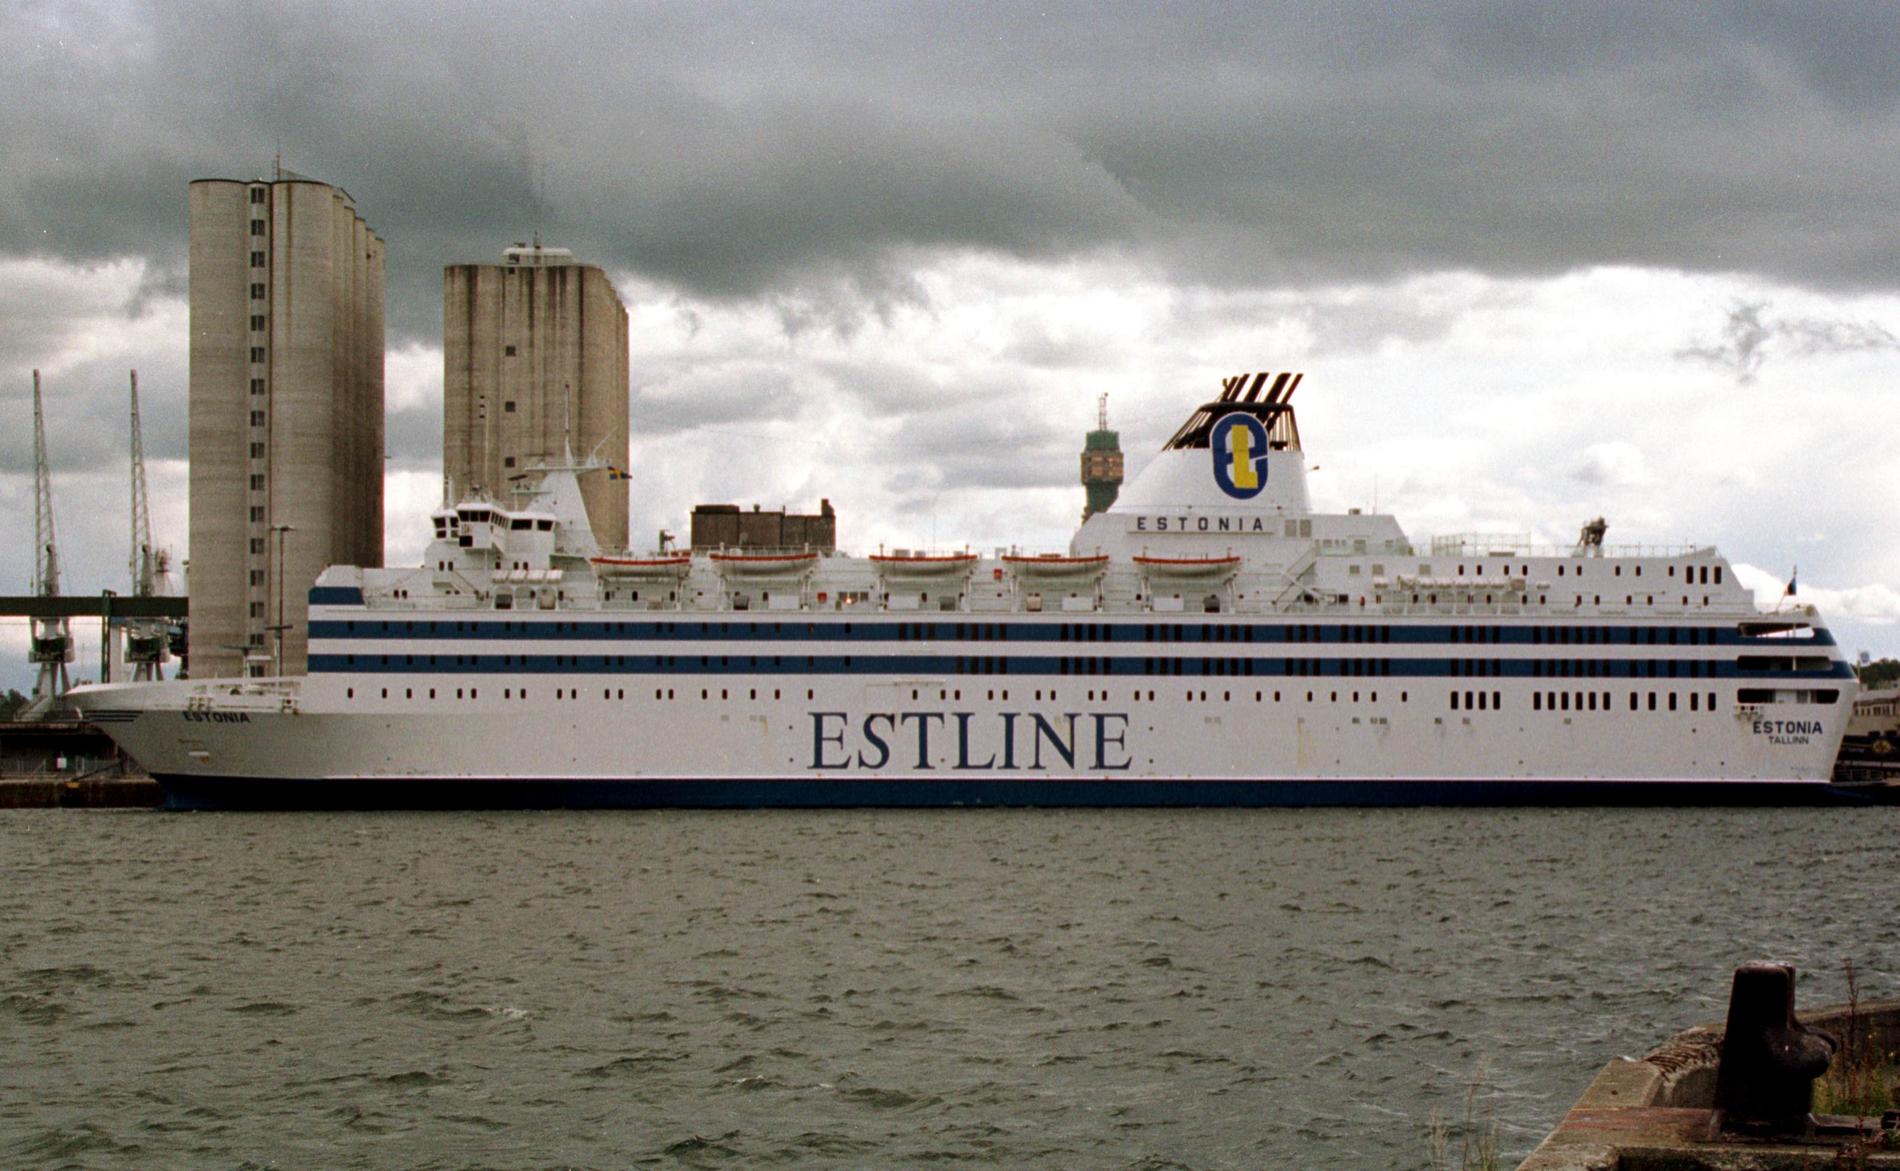 Fartyget M/S Estonia vid kaj i Stockholm 1993, året före olyckan. Värtahamnen